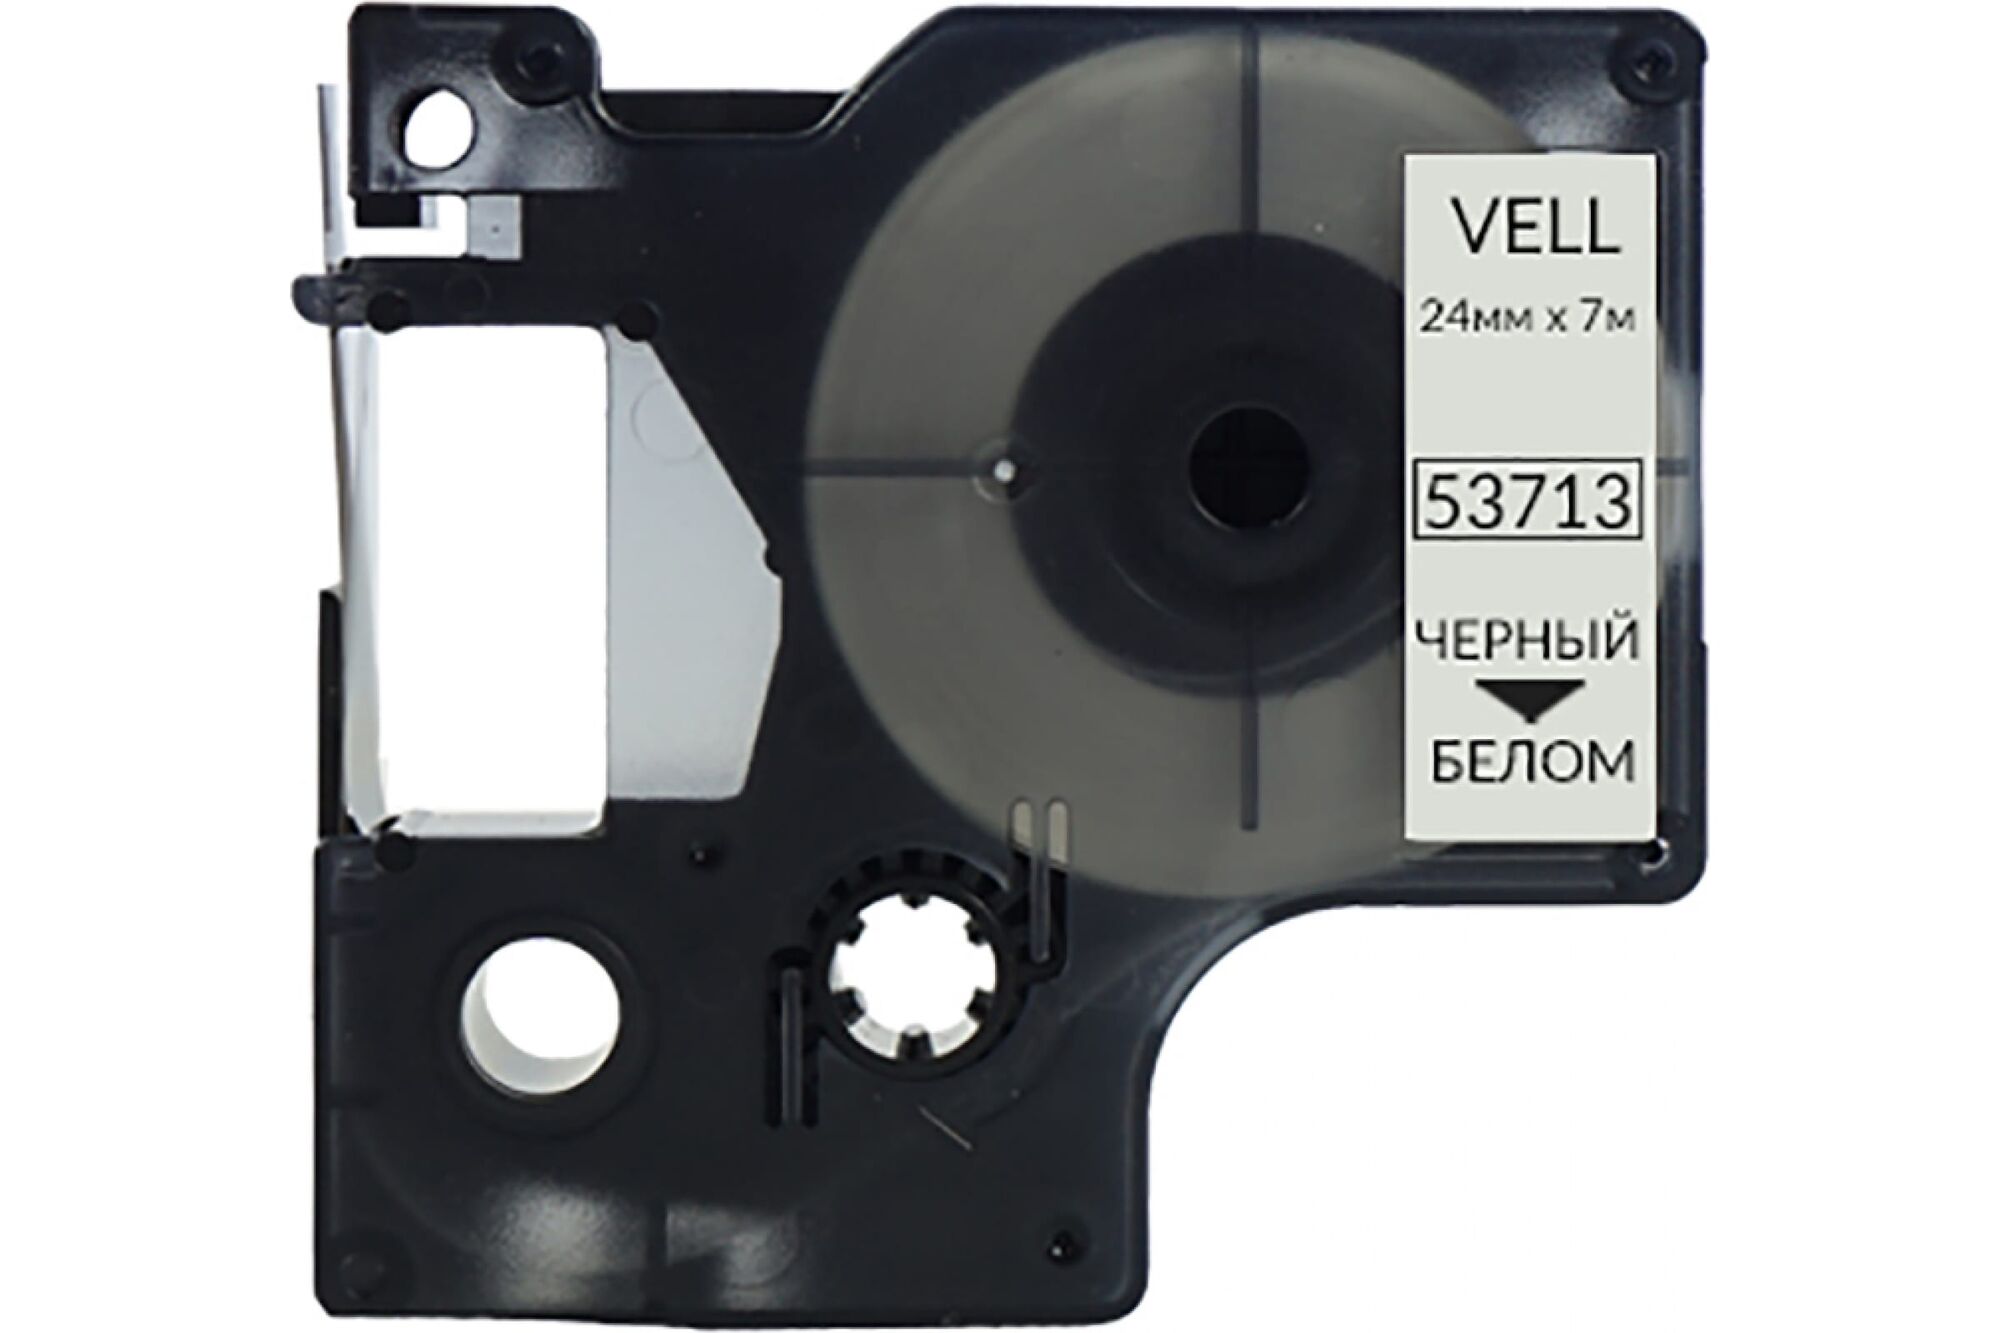 Лента Vell VL-D-S0720930/53713 24 мм, черный на белом, для 500TS/Rhino 6000 328690